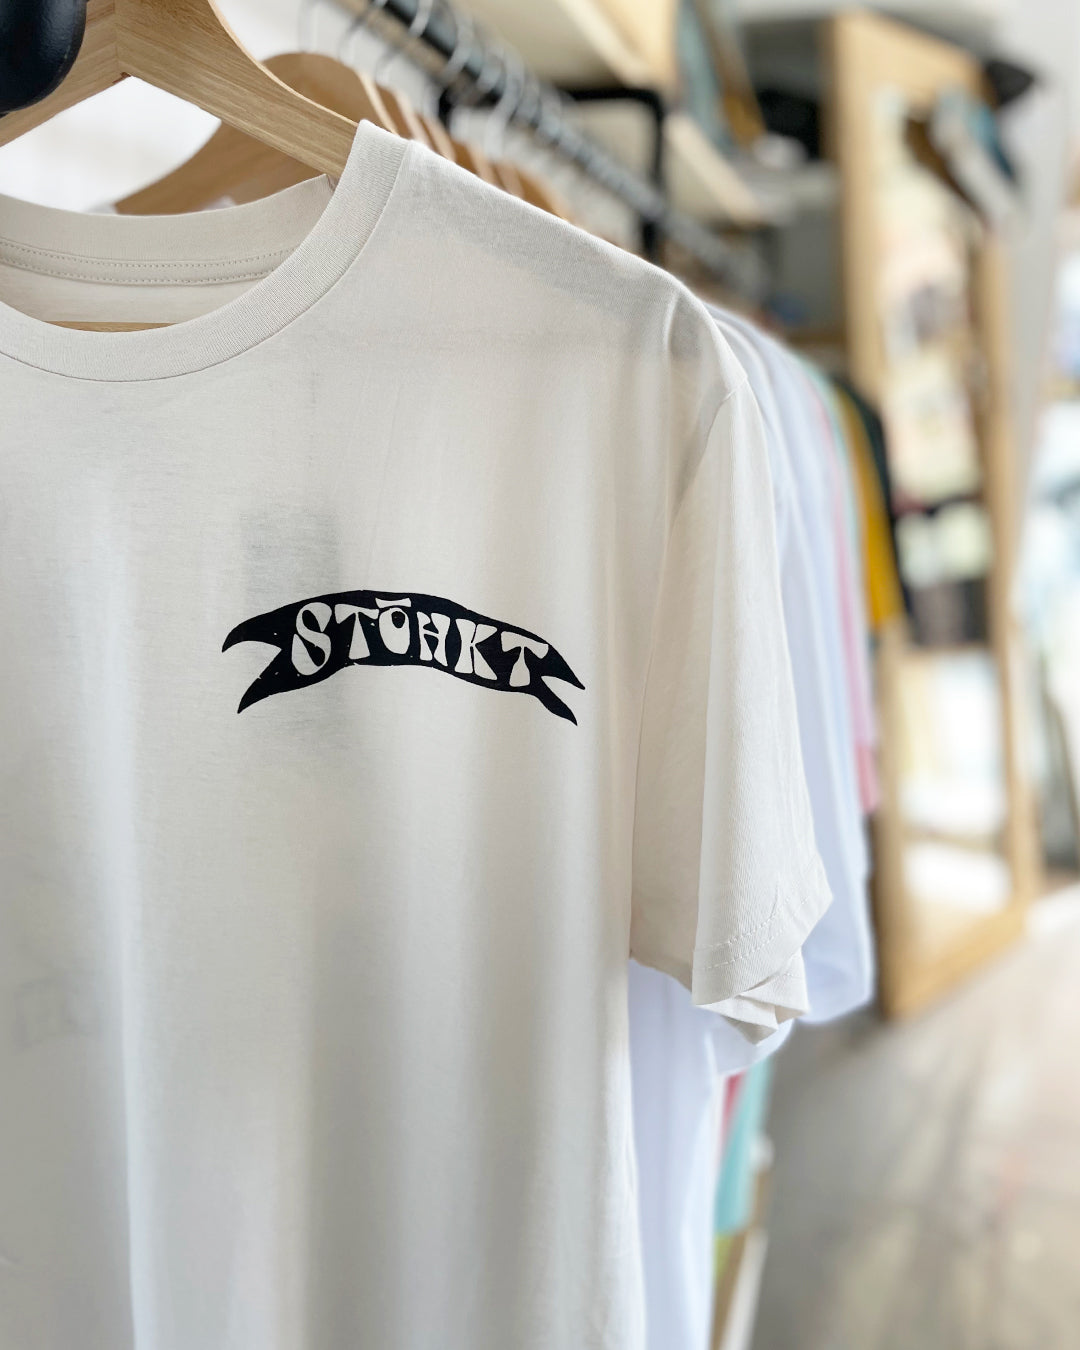 STOHKT 2304 Edición limitada - Camiseta del mes